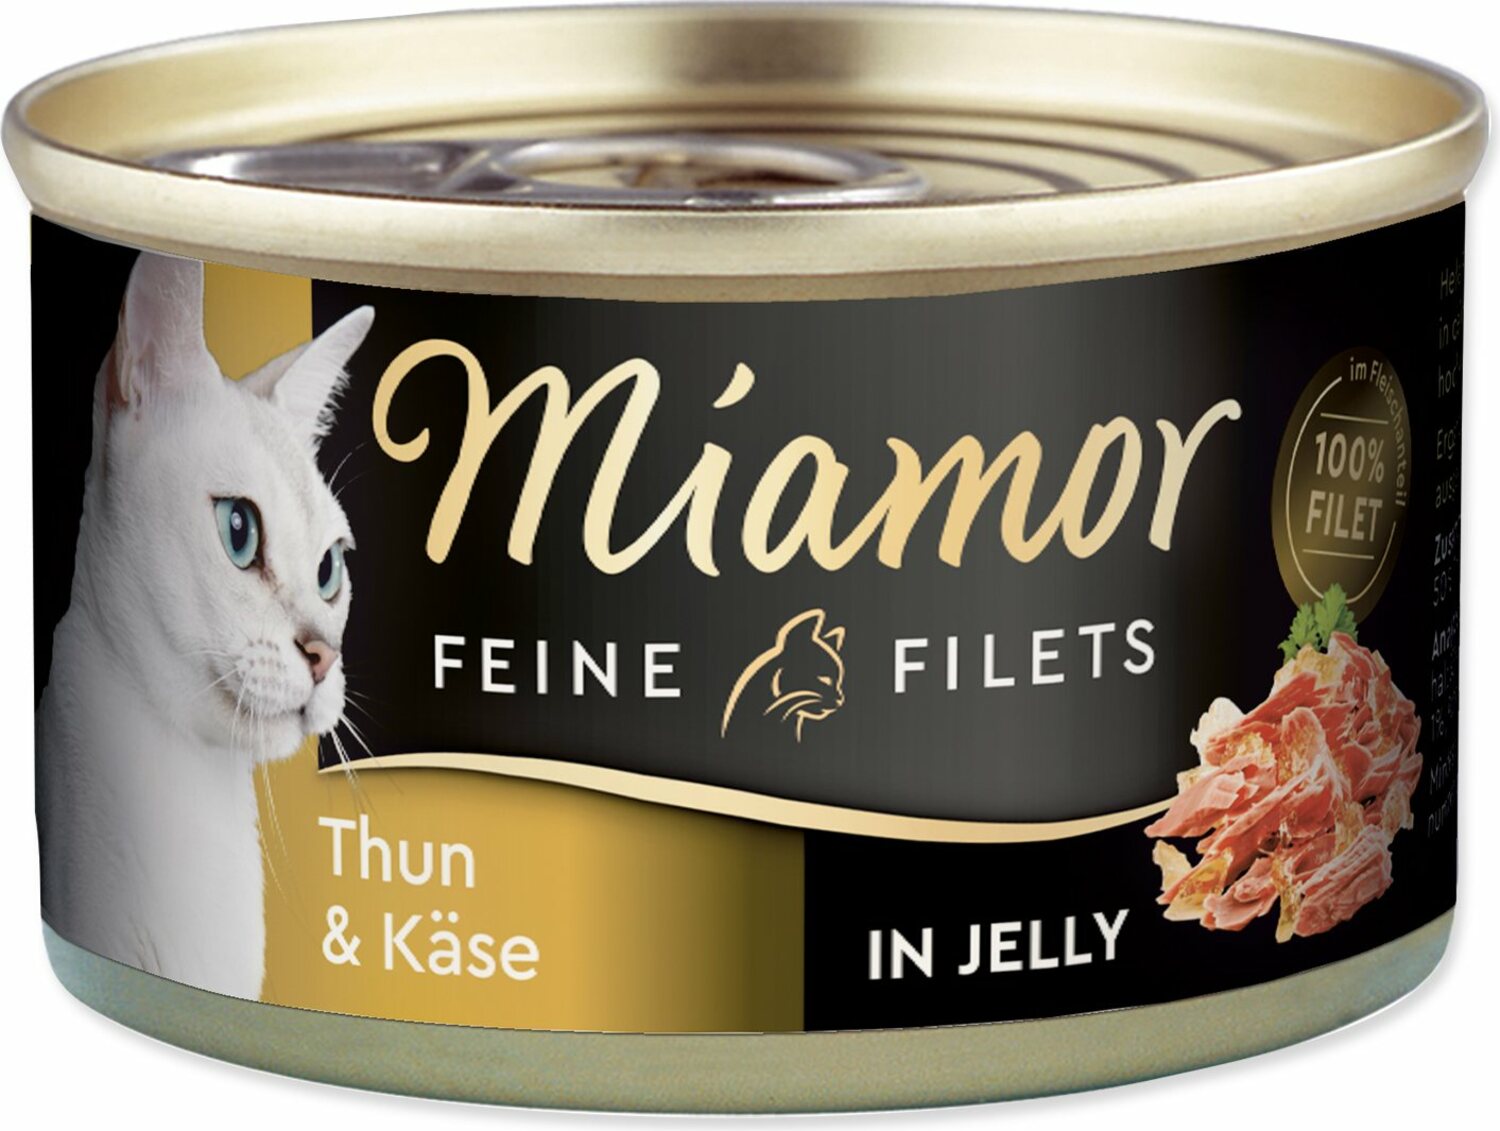 Konzerva Miamor Feine Filets Adult tuňák se sýrem v želé 100g